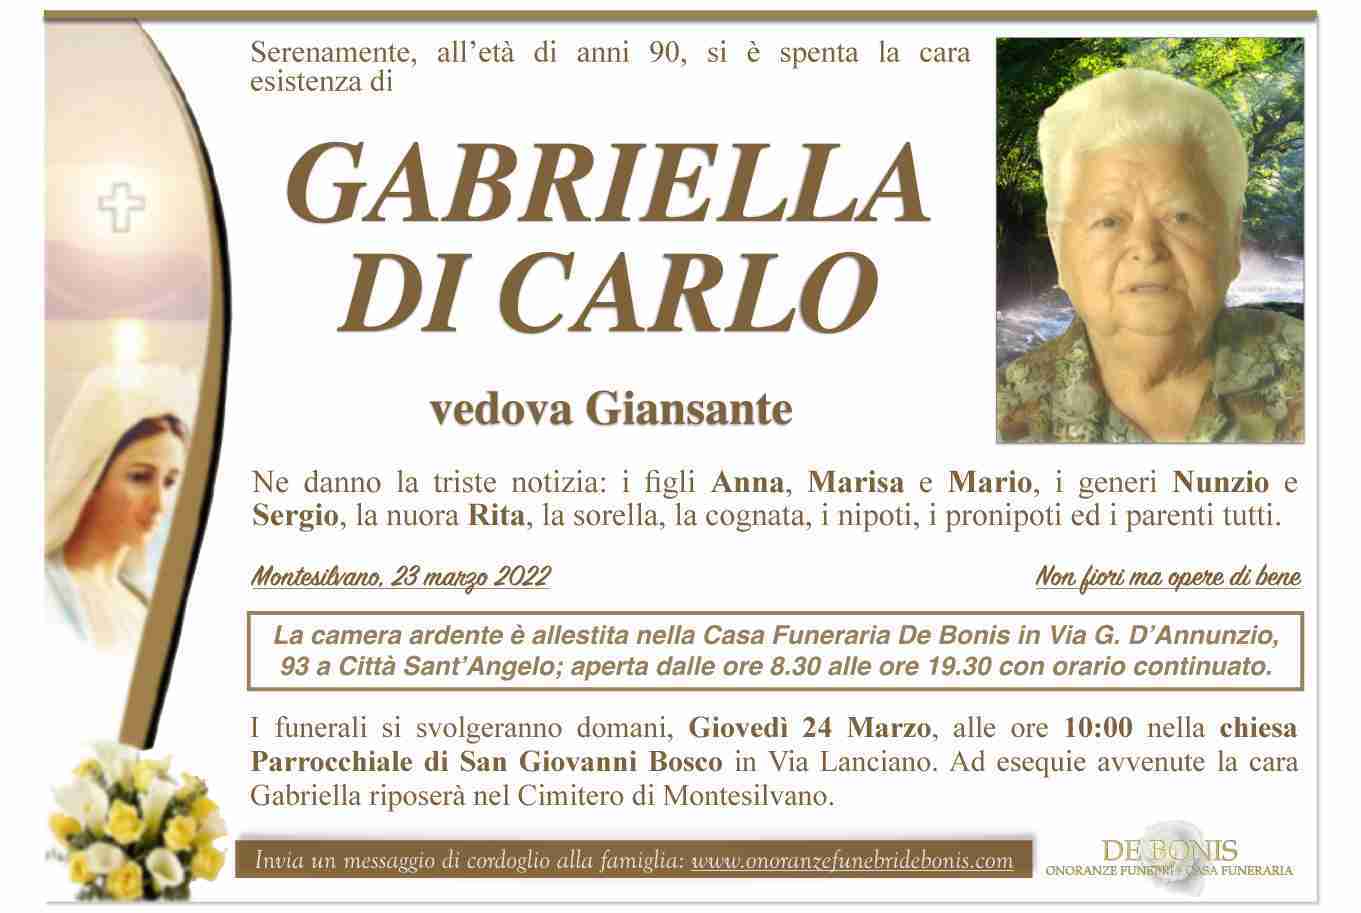 Gabriella Di Carlo